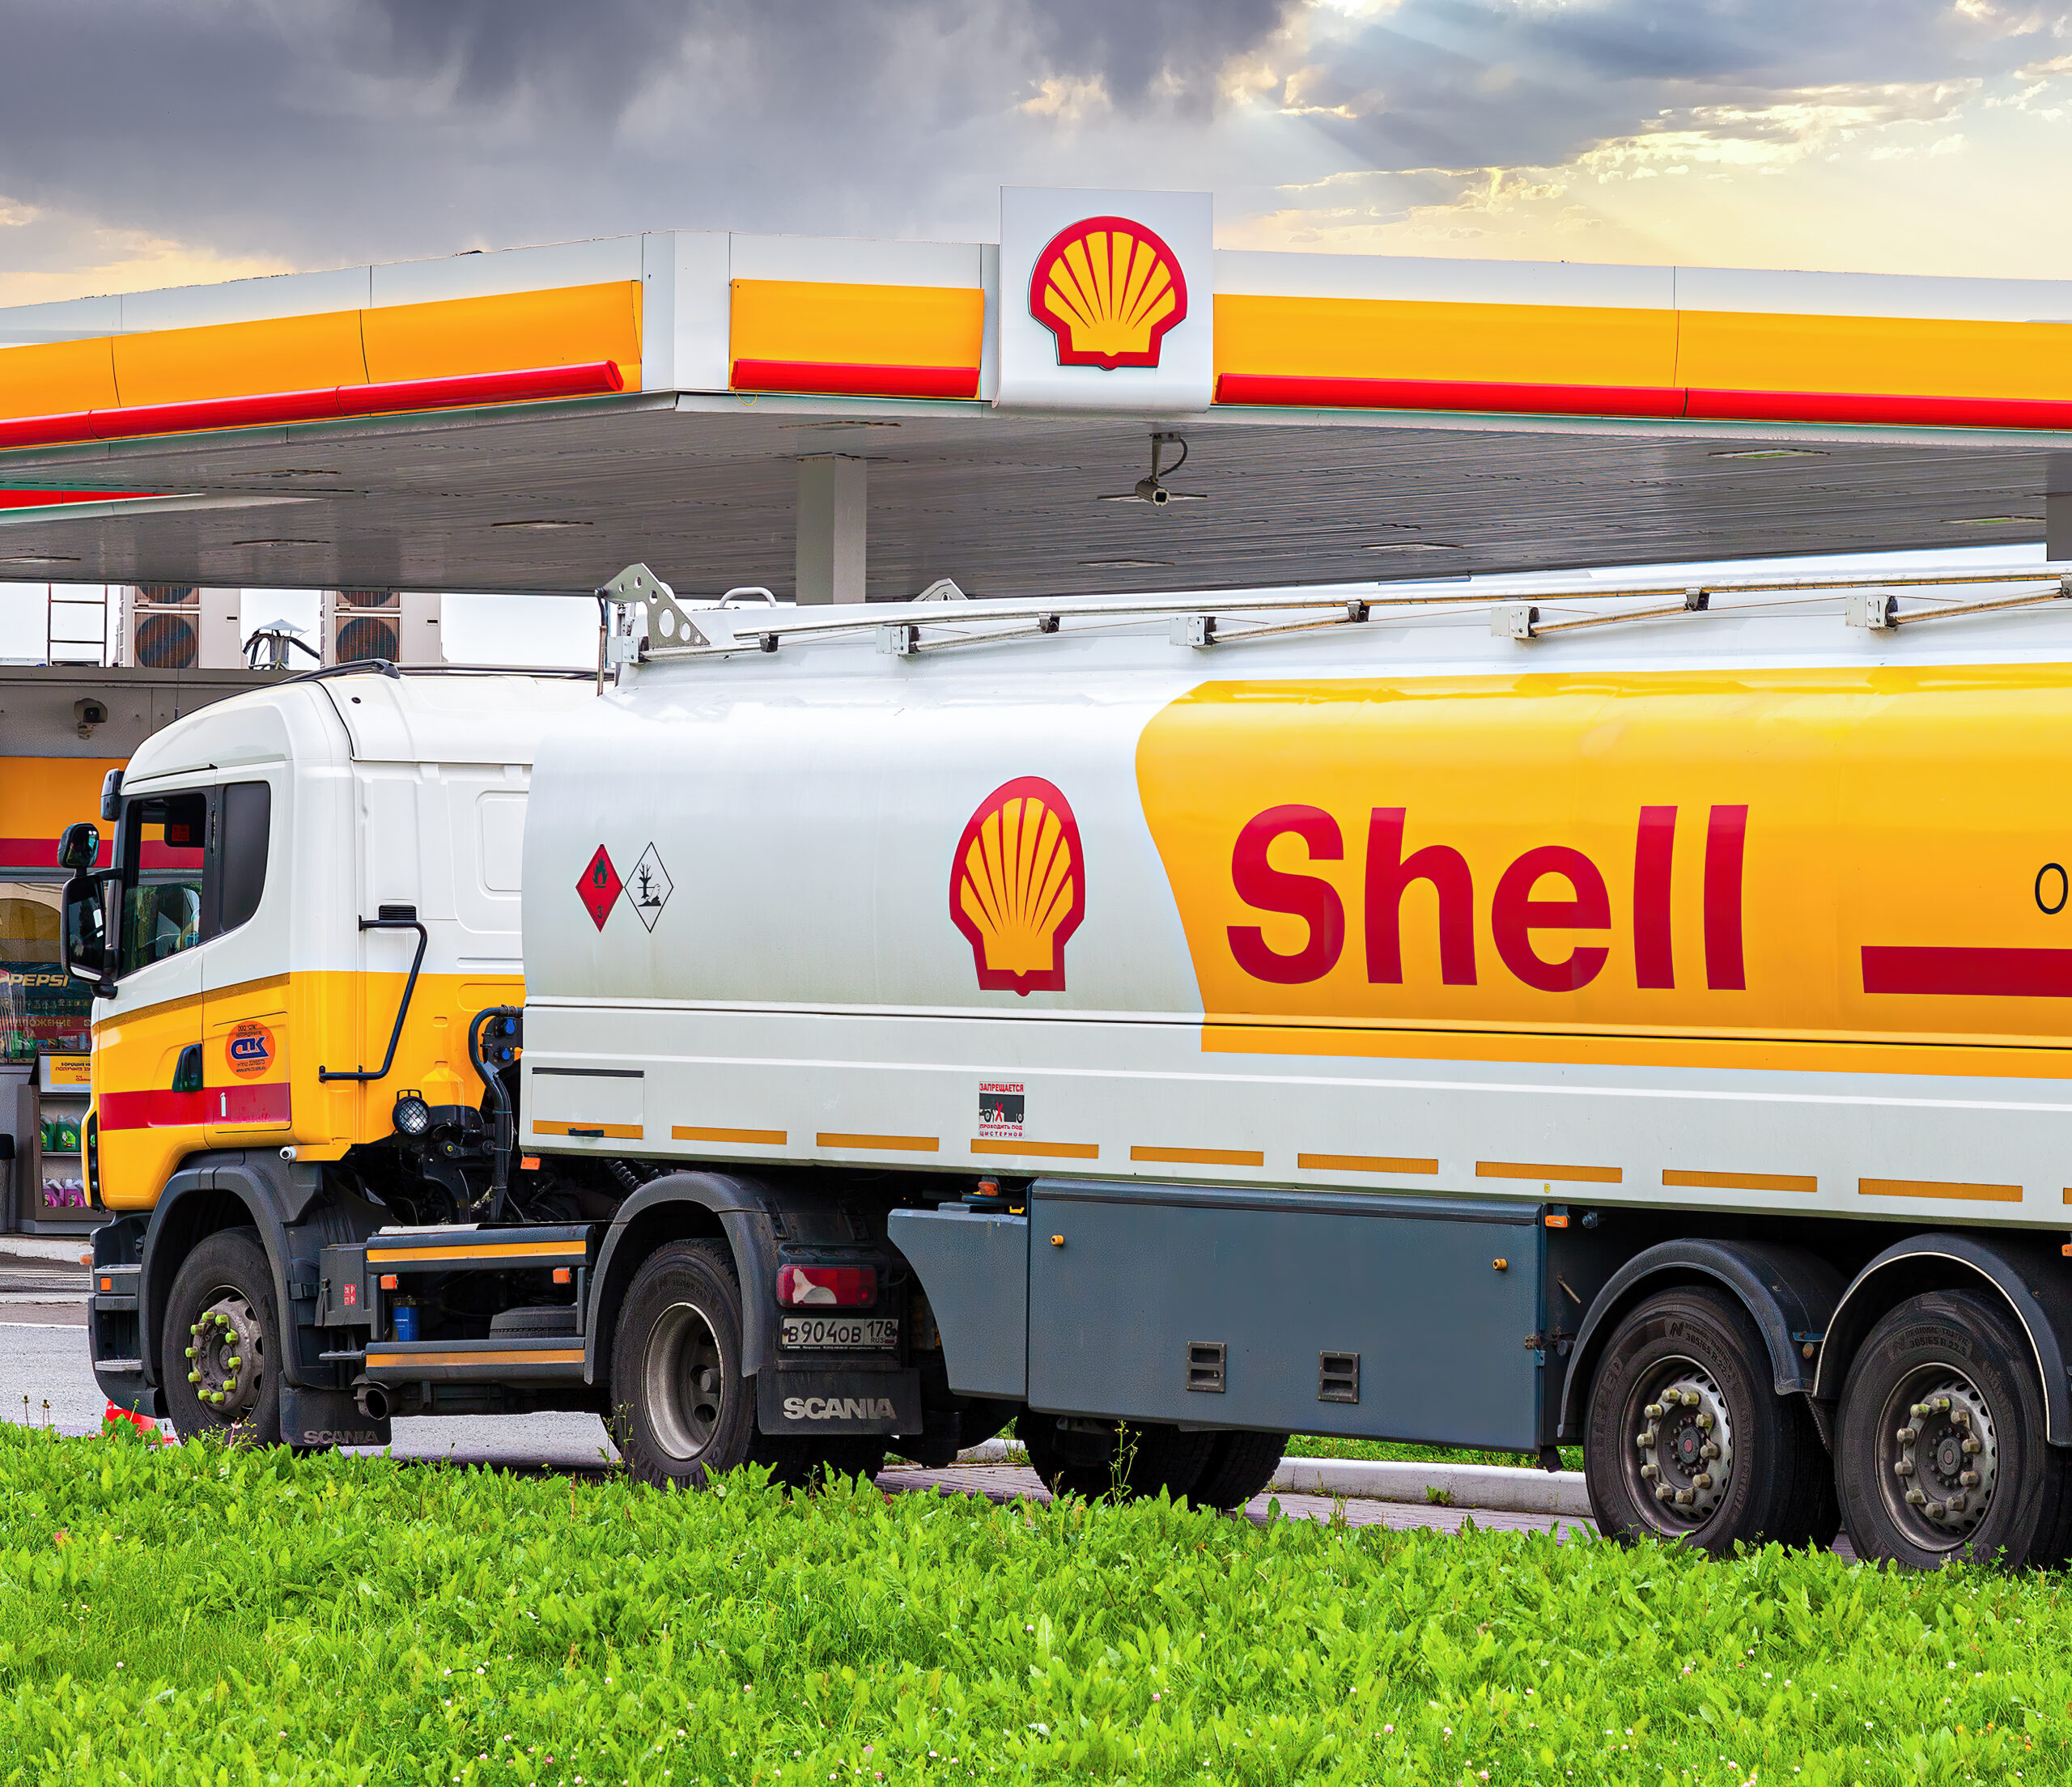 Shell registra beneficios por 40.000 millones de dólares los mayores beneficios en 115 años